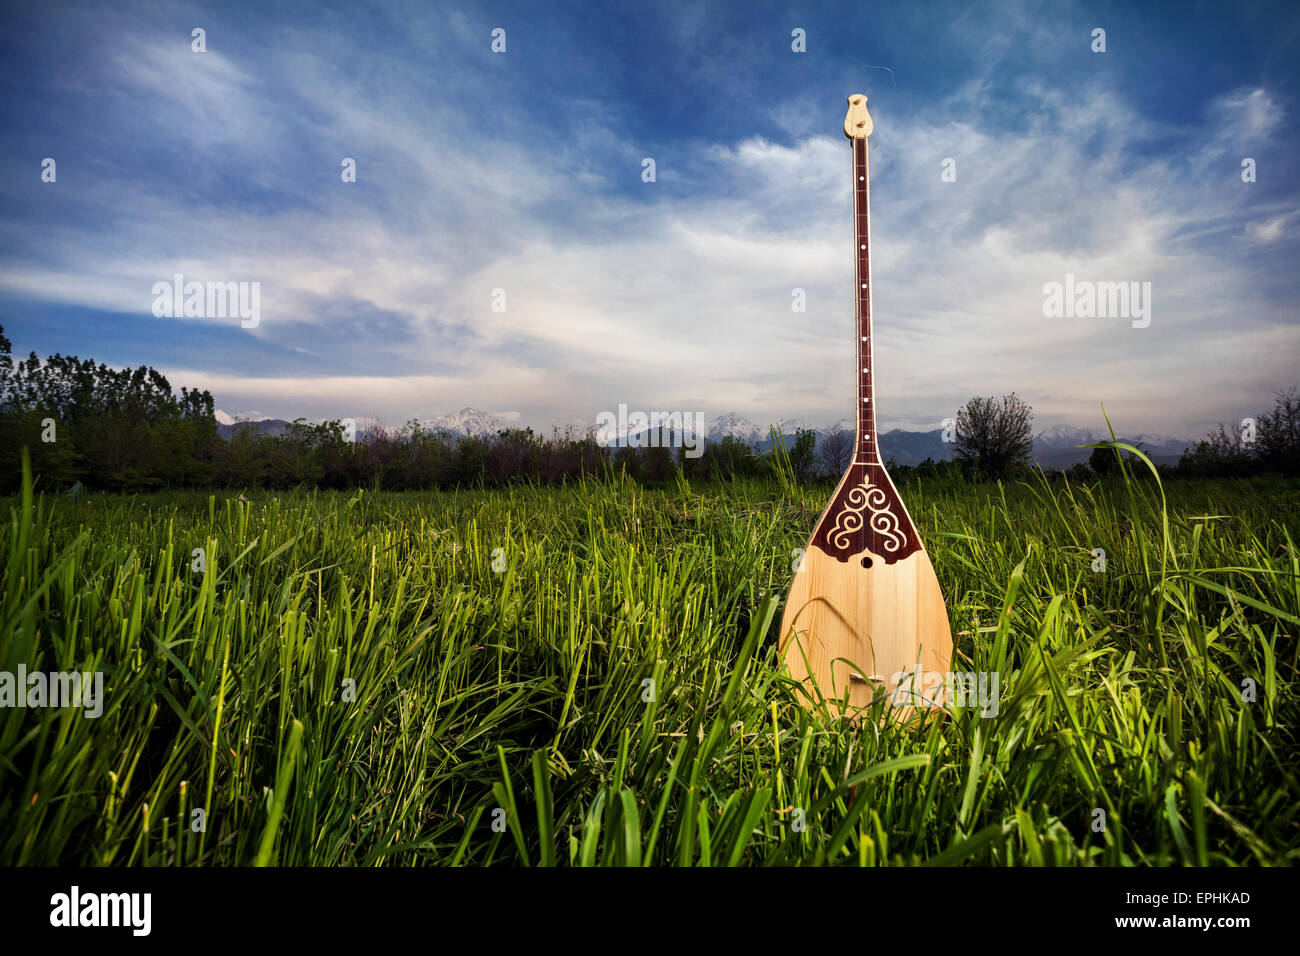 Dombura kasachischen Instrument in den Rasen am blauen Himmel Stockfoto